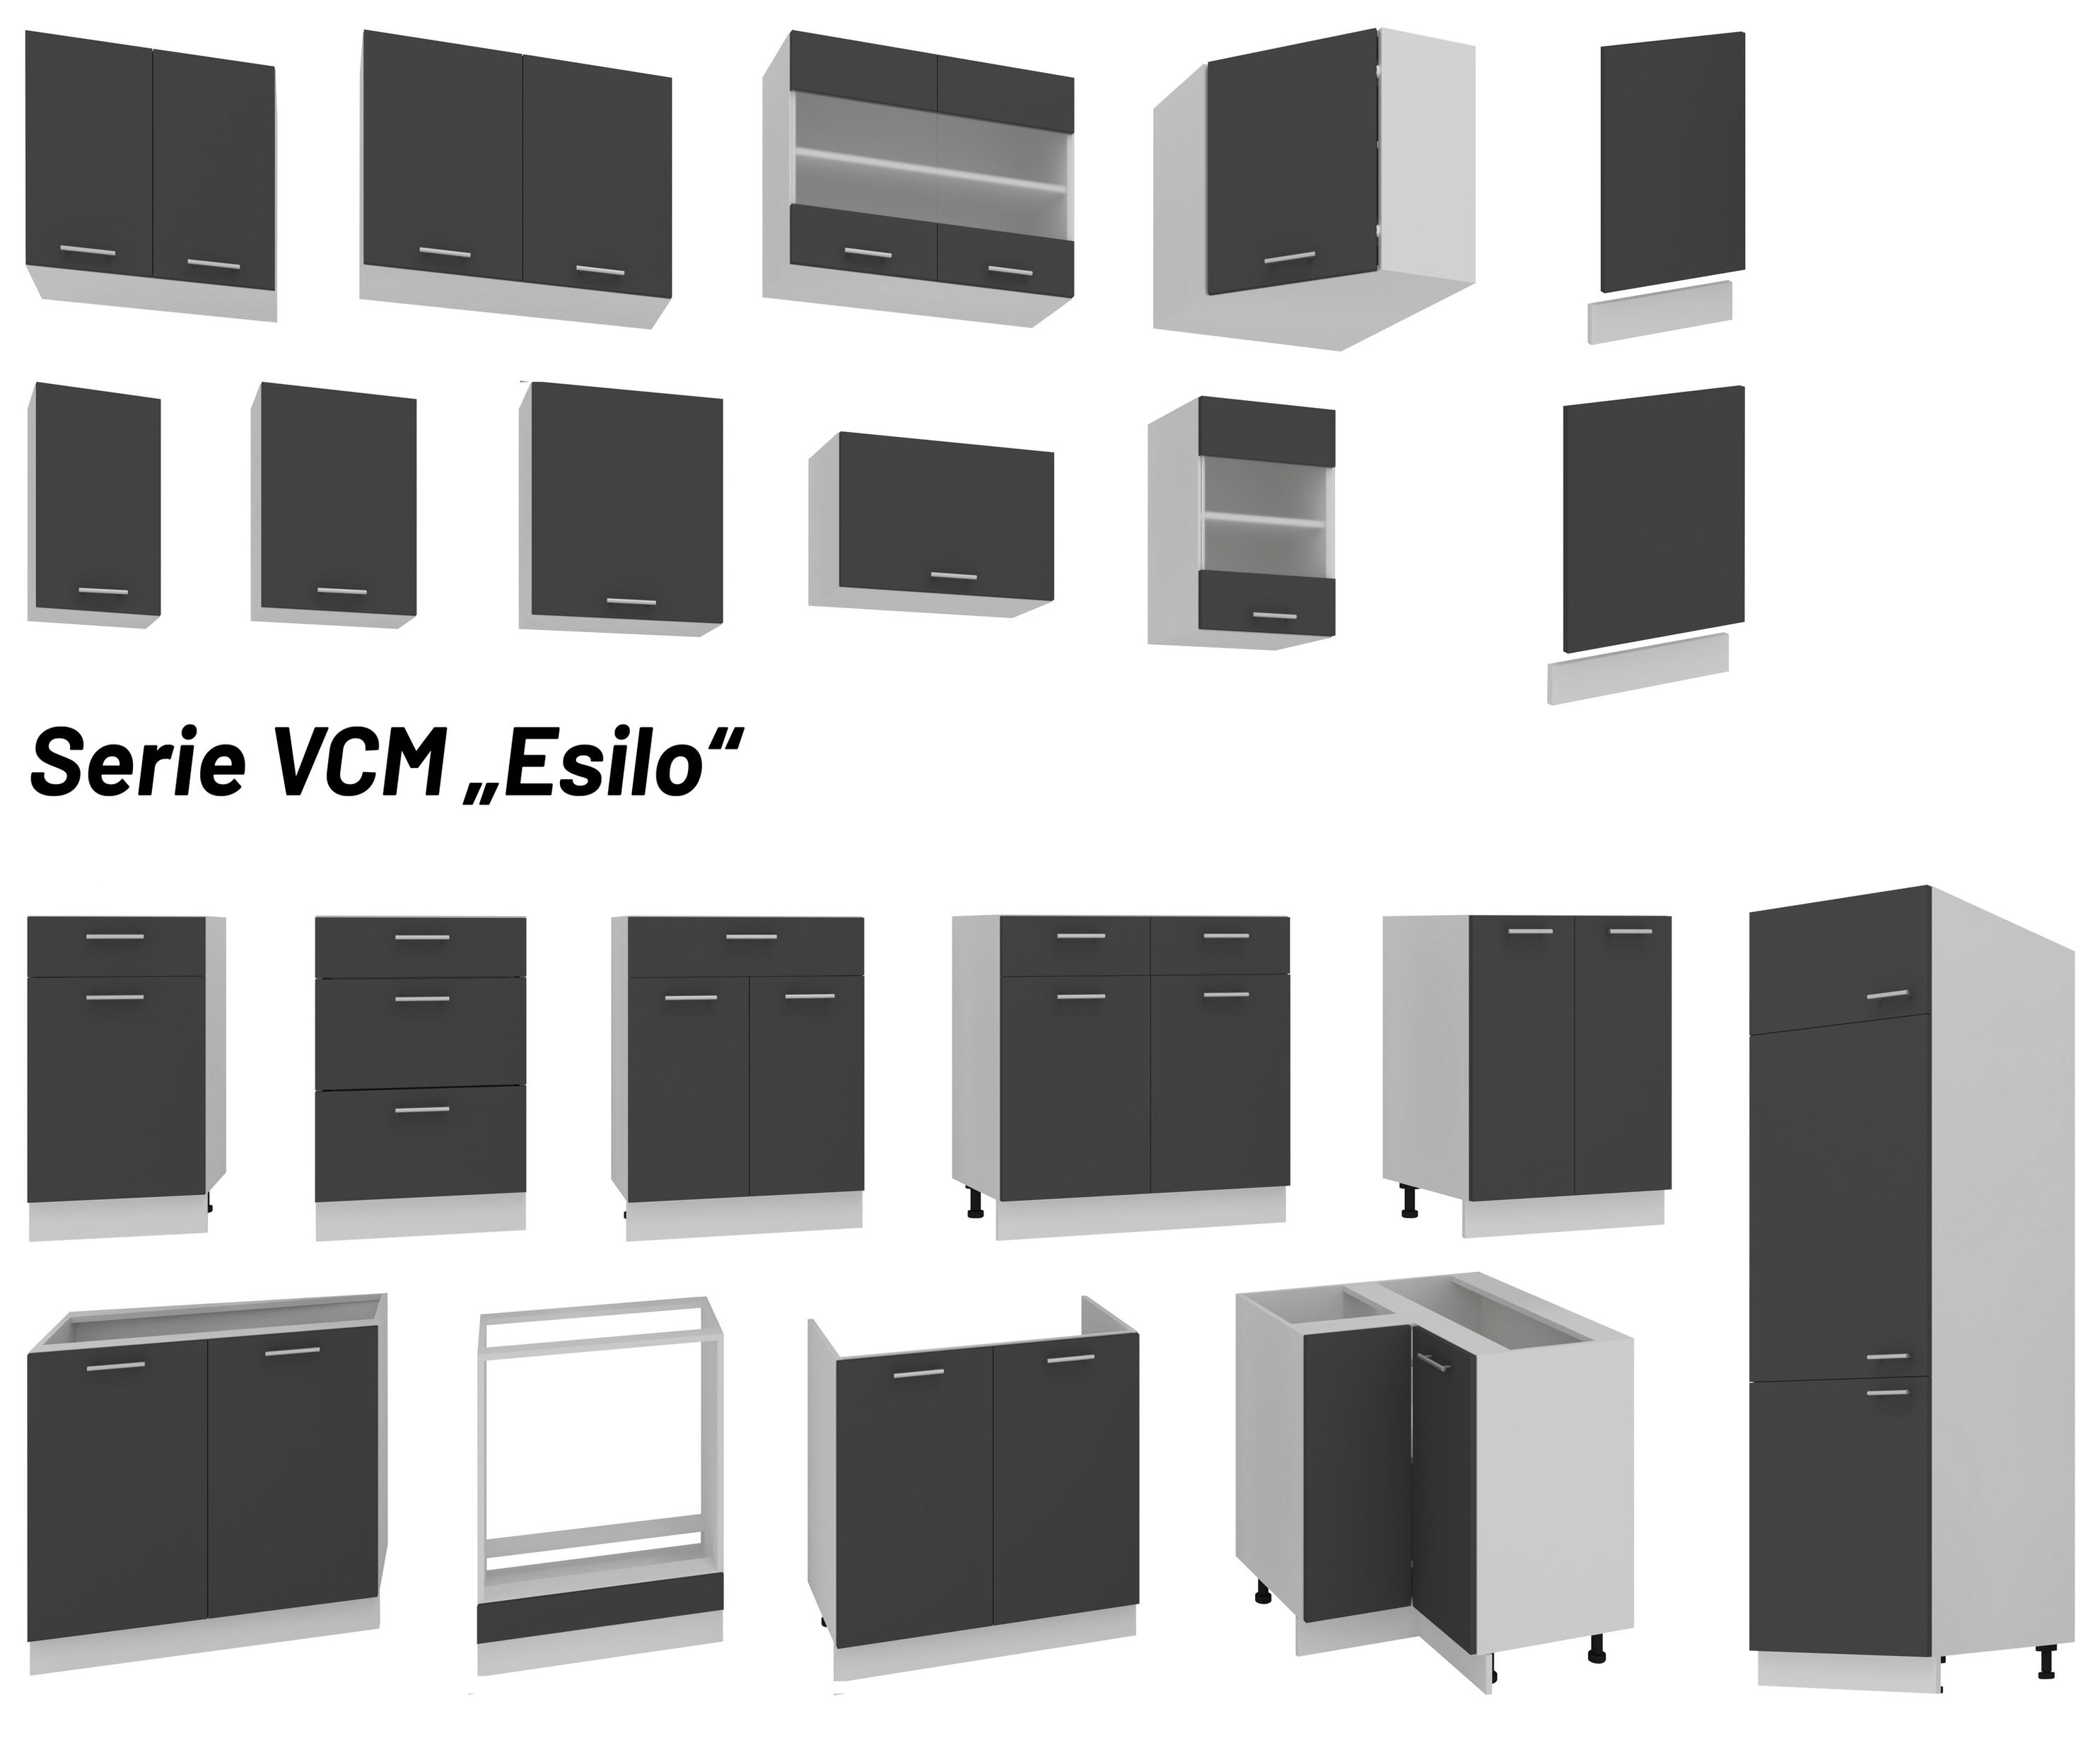 VCM Küchenschrank Breite 60 cm Hochschrank Küche Küchenmöbel Esilo Farbe:  Weiß Anthrazit | Weltbild.de